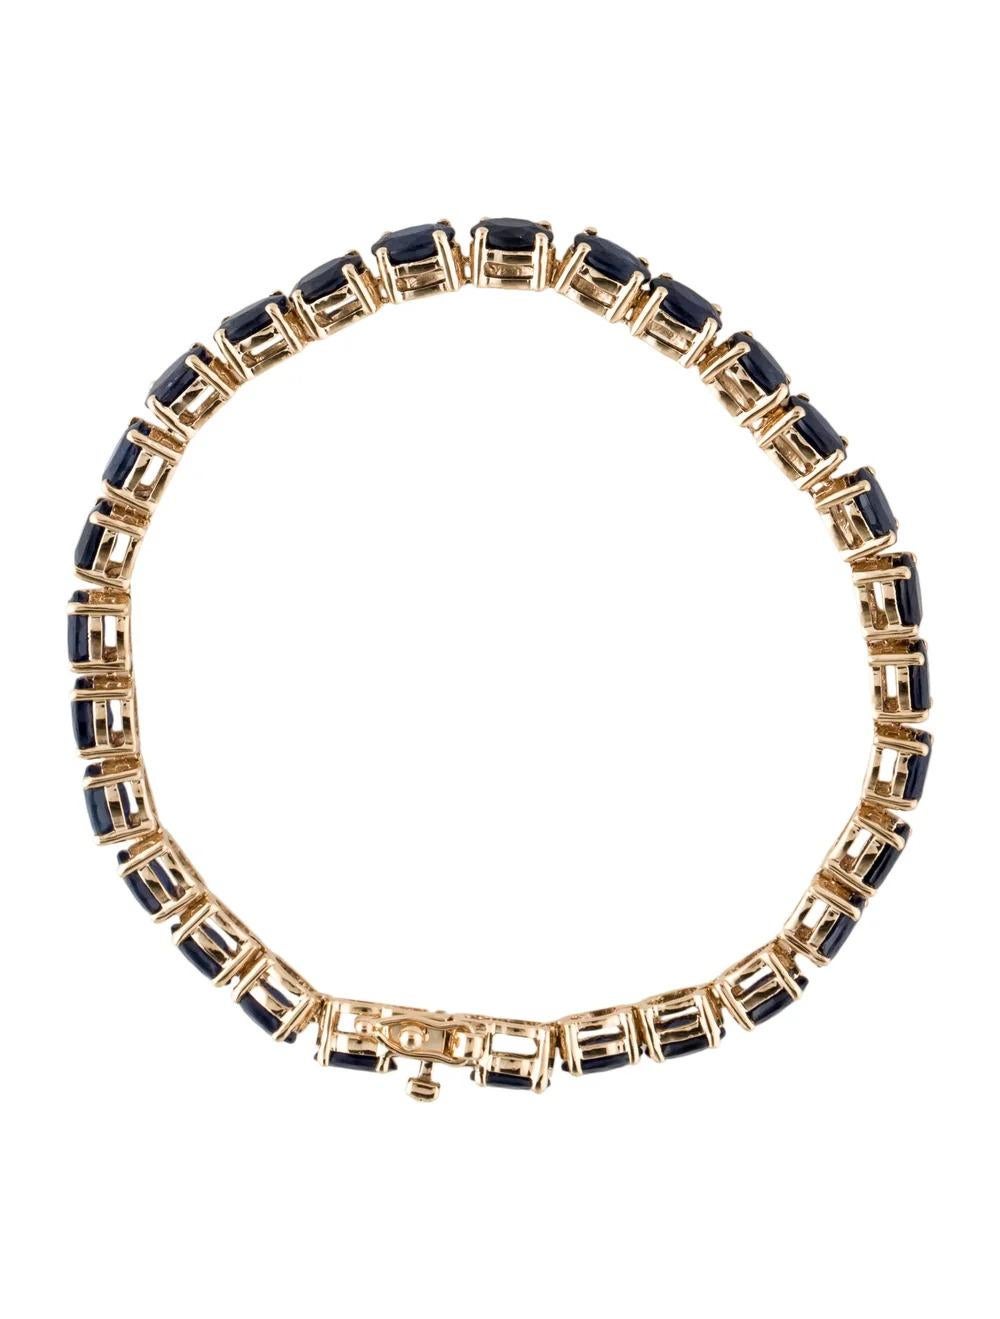 Oval Cut 14K 16.10ctw Sapphire Link Bracelet - Stunning Blue Gemstones, Timeless Elegance For Sale